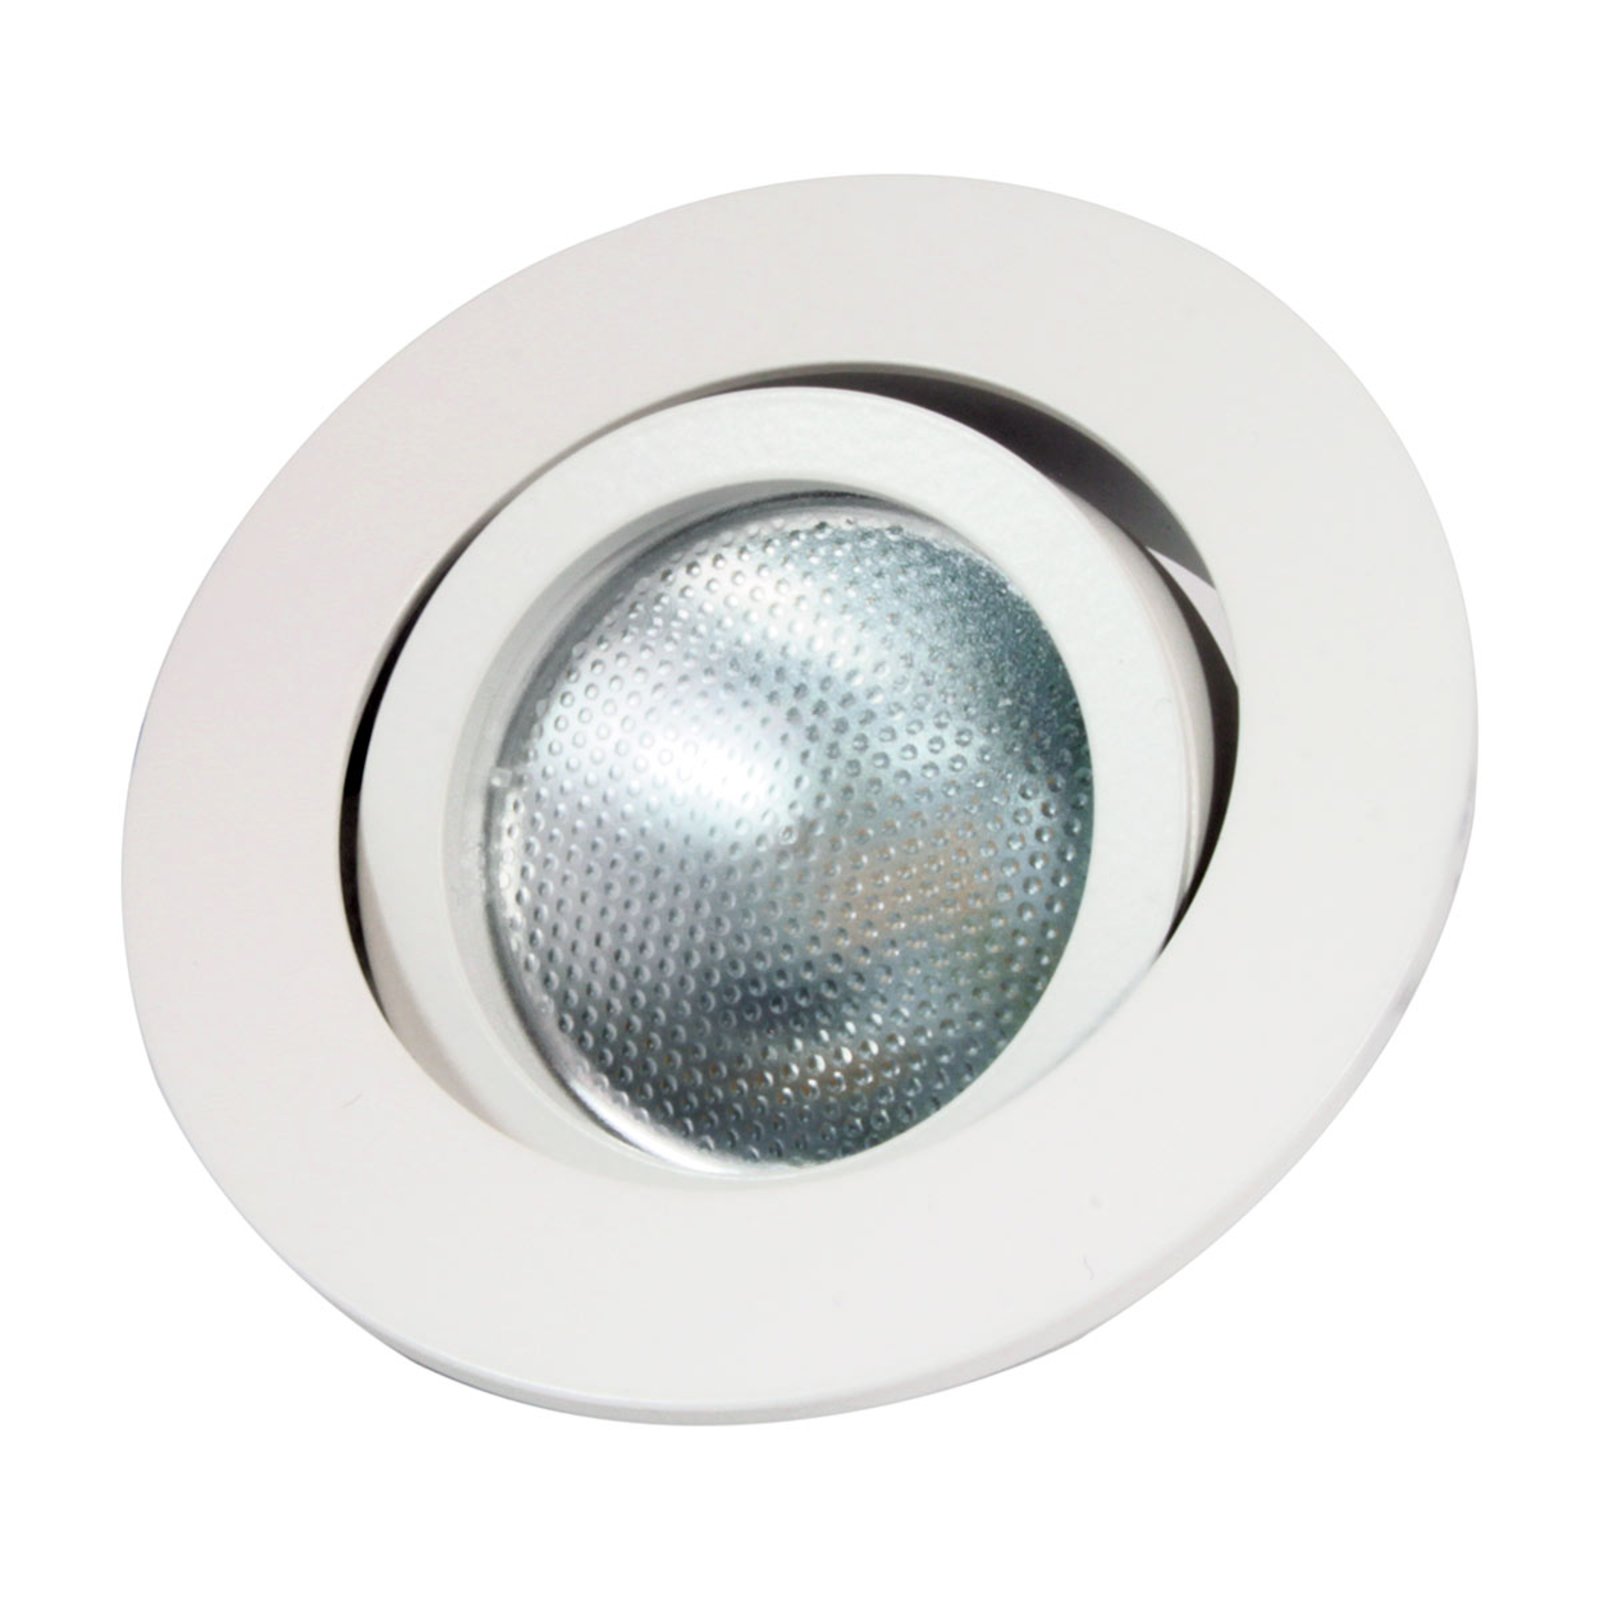 LED kroužek pro vestavbu Decoclic GU10/GU5.3, kulatý, bílý